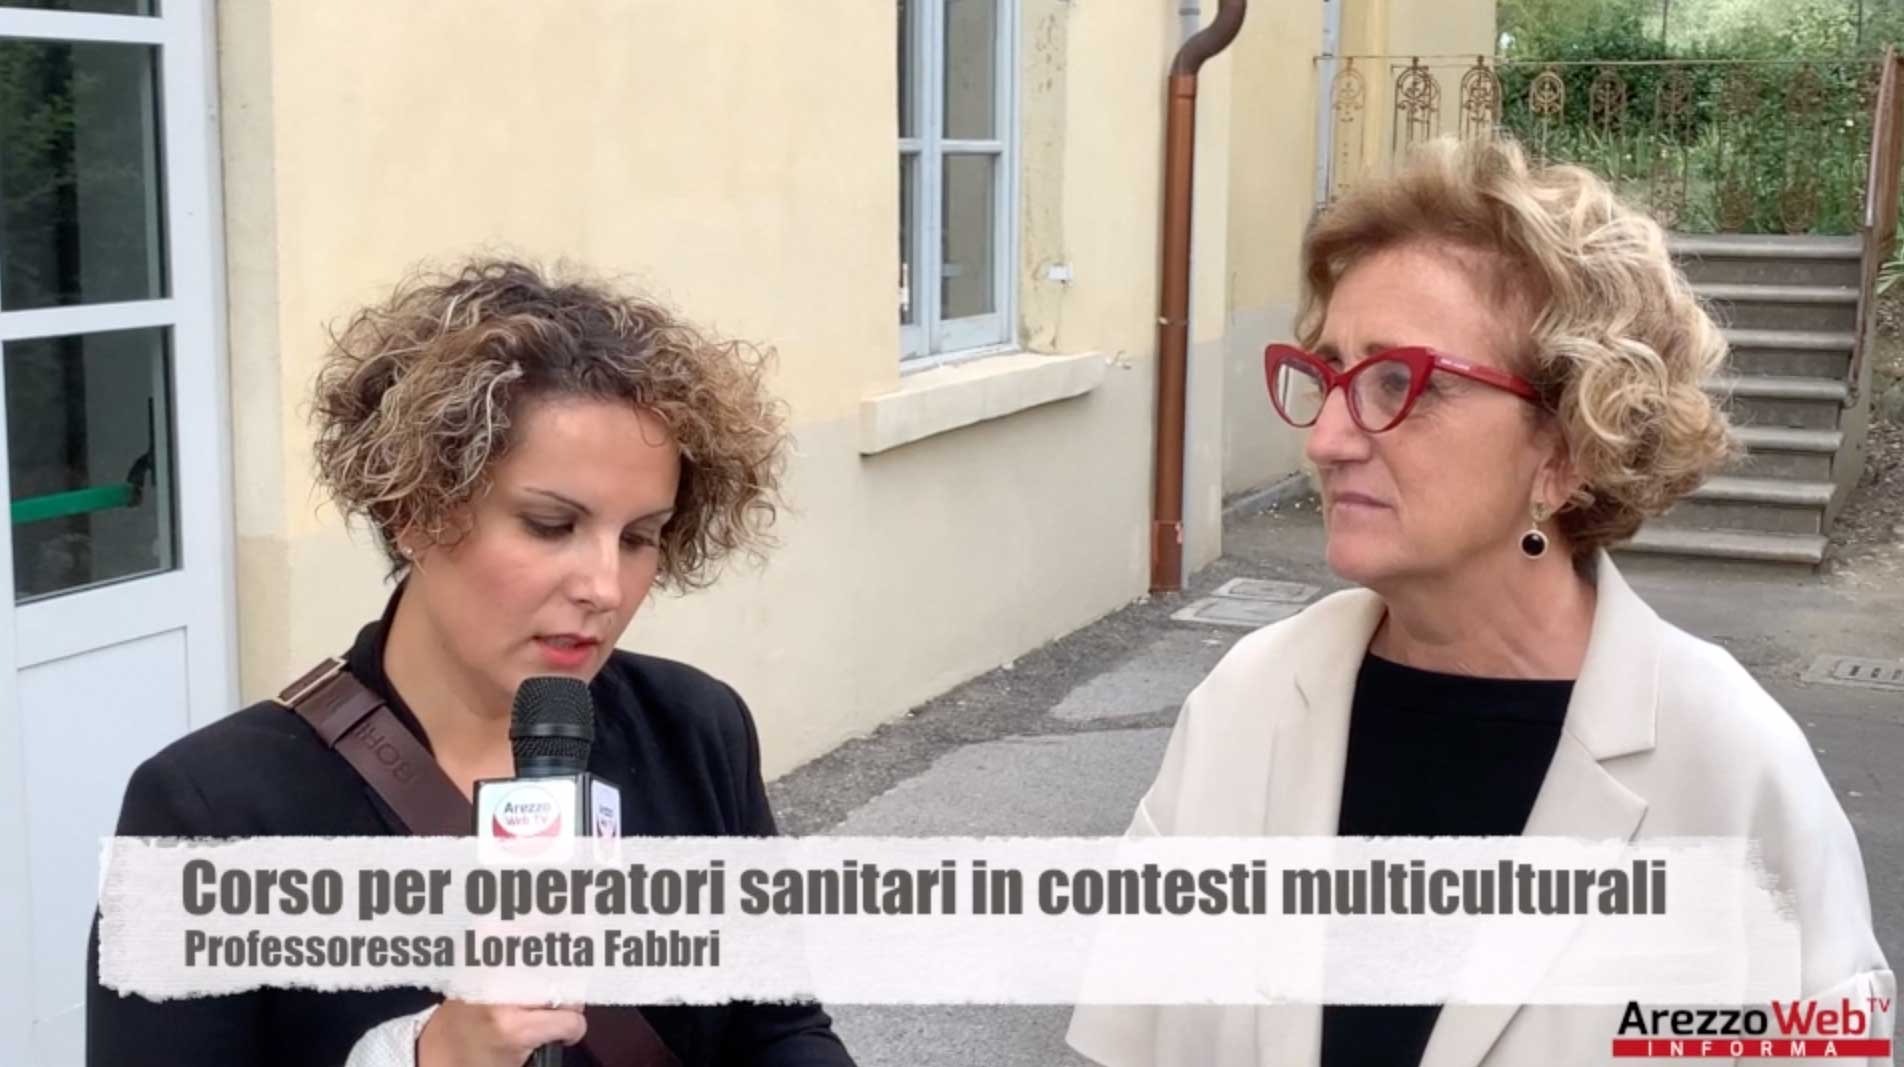 Corso per operatori sanitari in contesti multiculturali, intervista alla Professoressa Loretta Fabbri e al Dottor Massimo Gialli